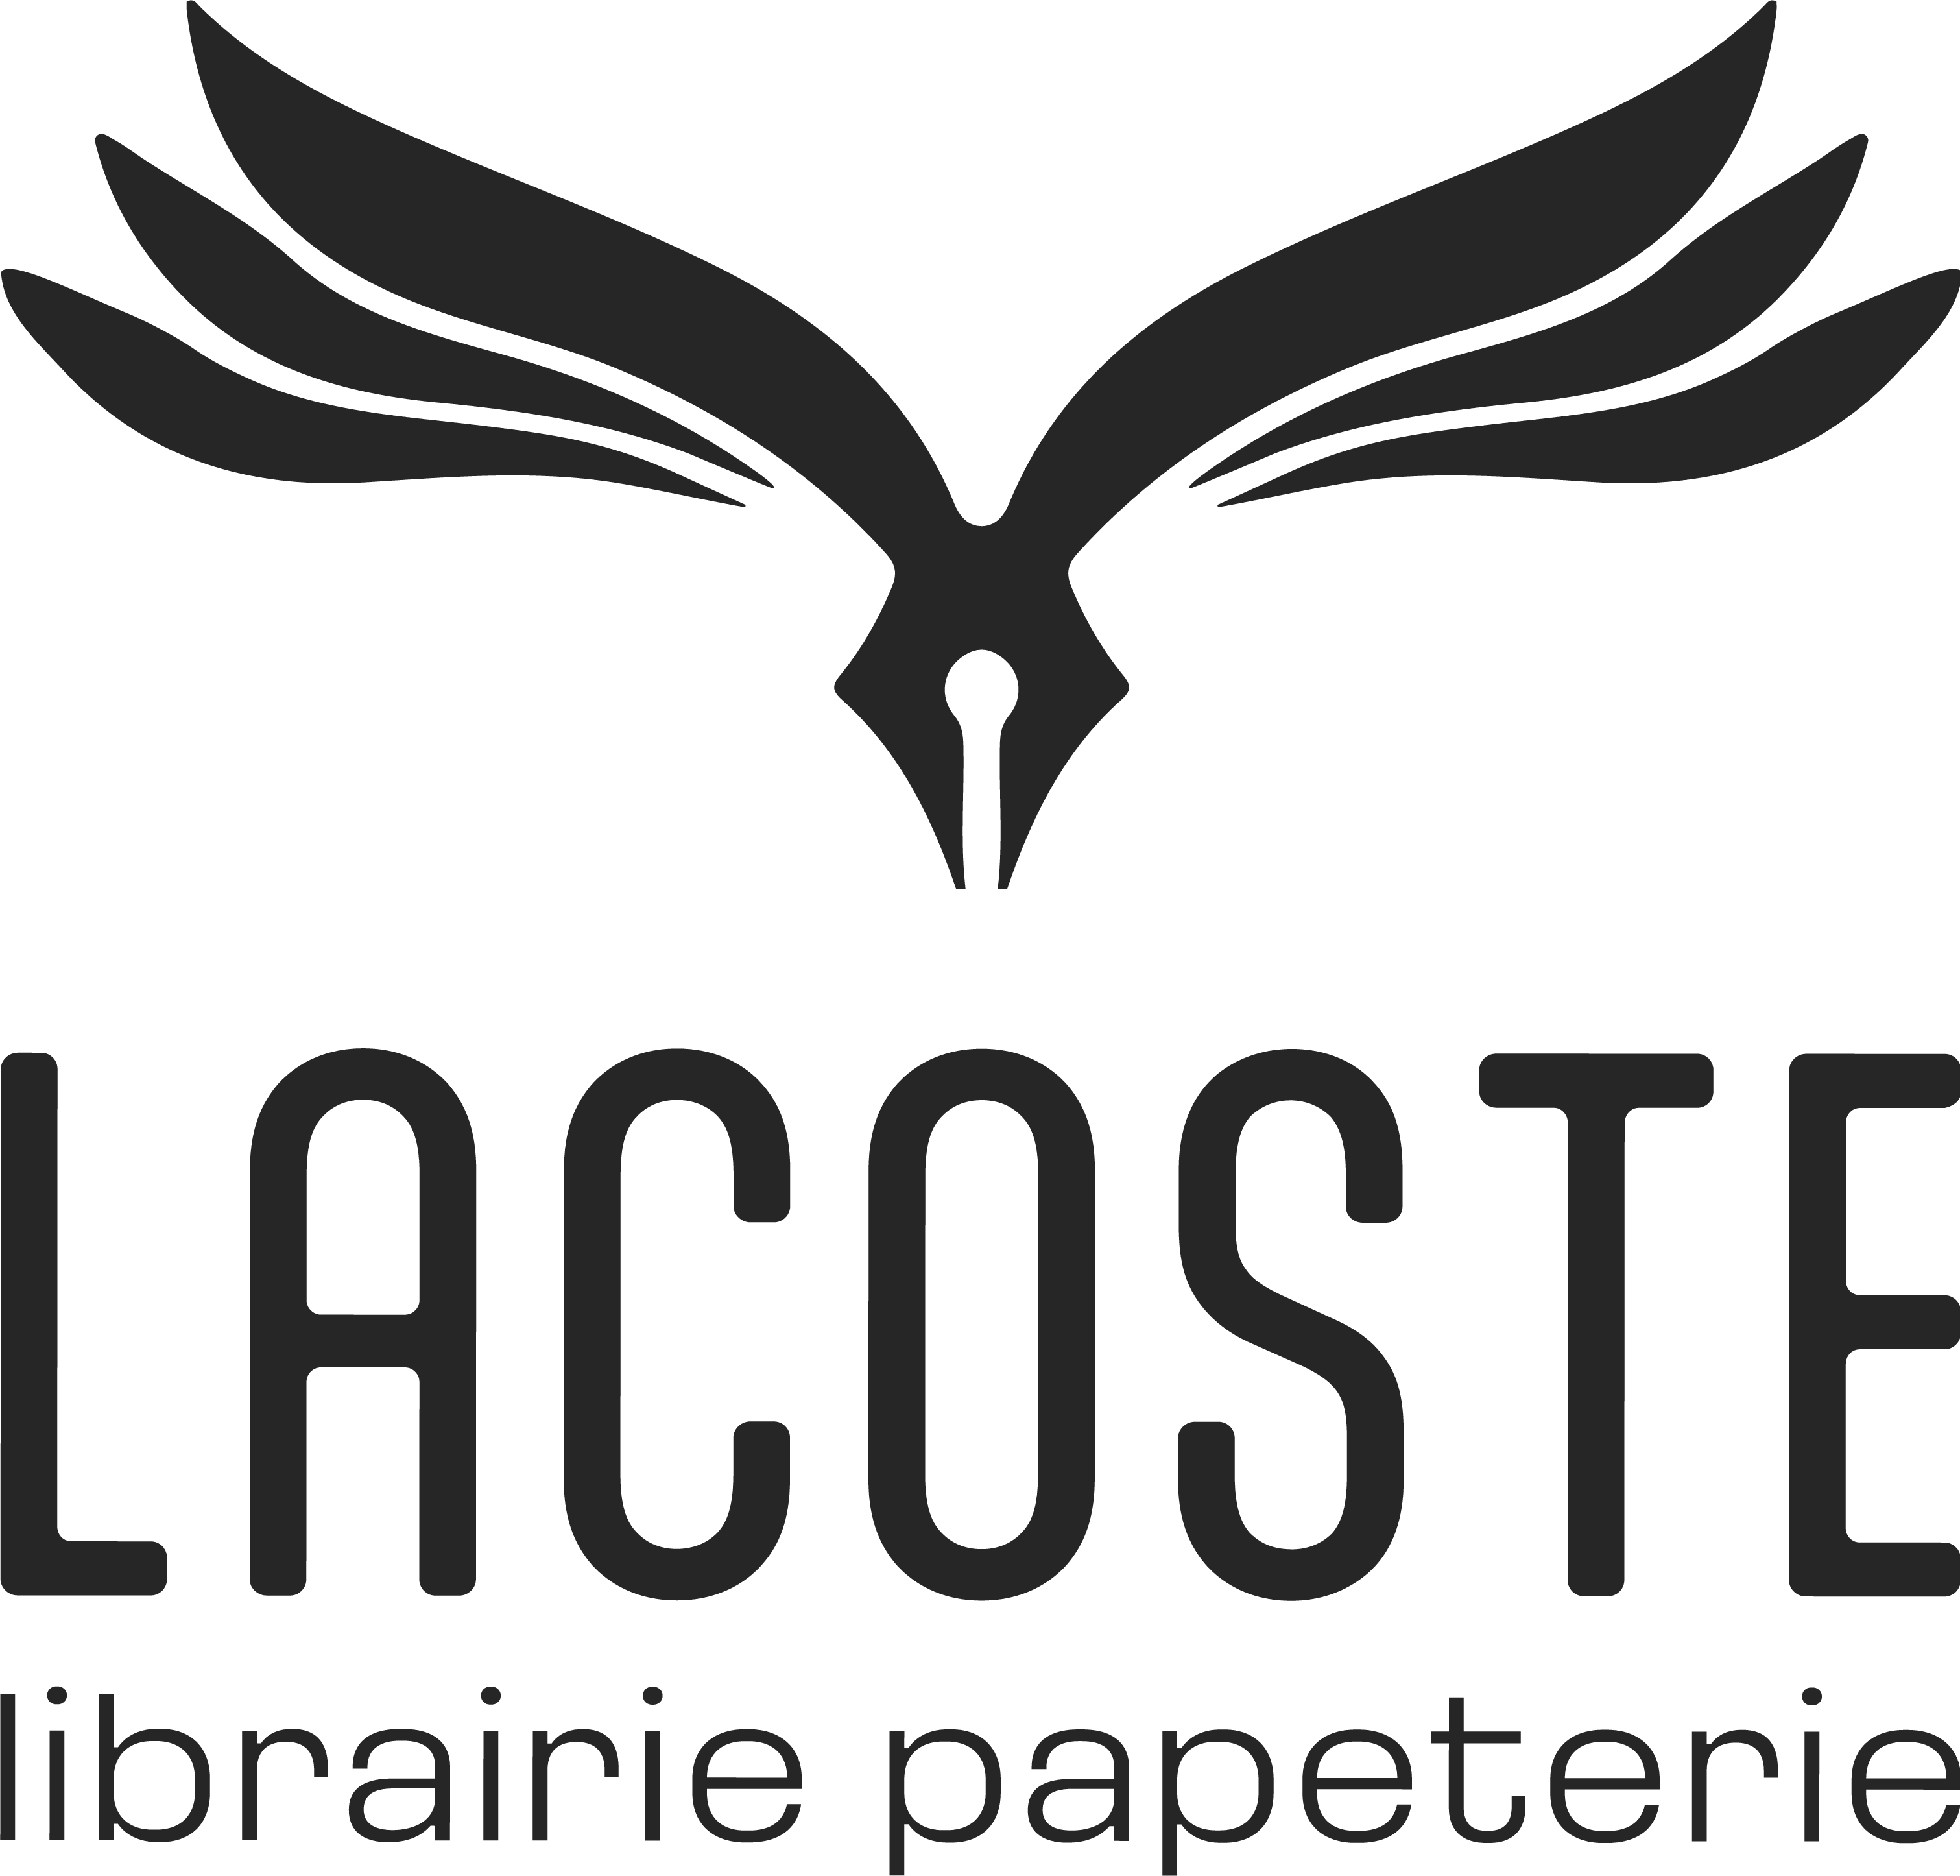 Librairie papeterie Lacoste – Mont-de-Marsan